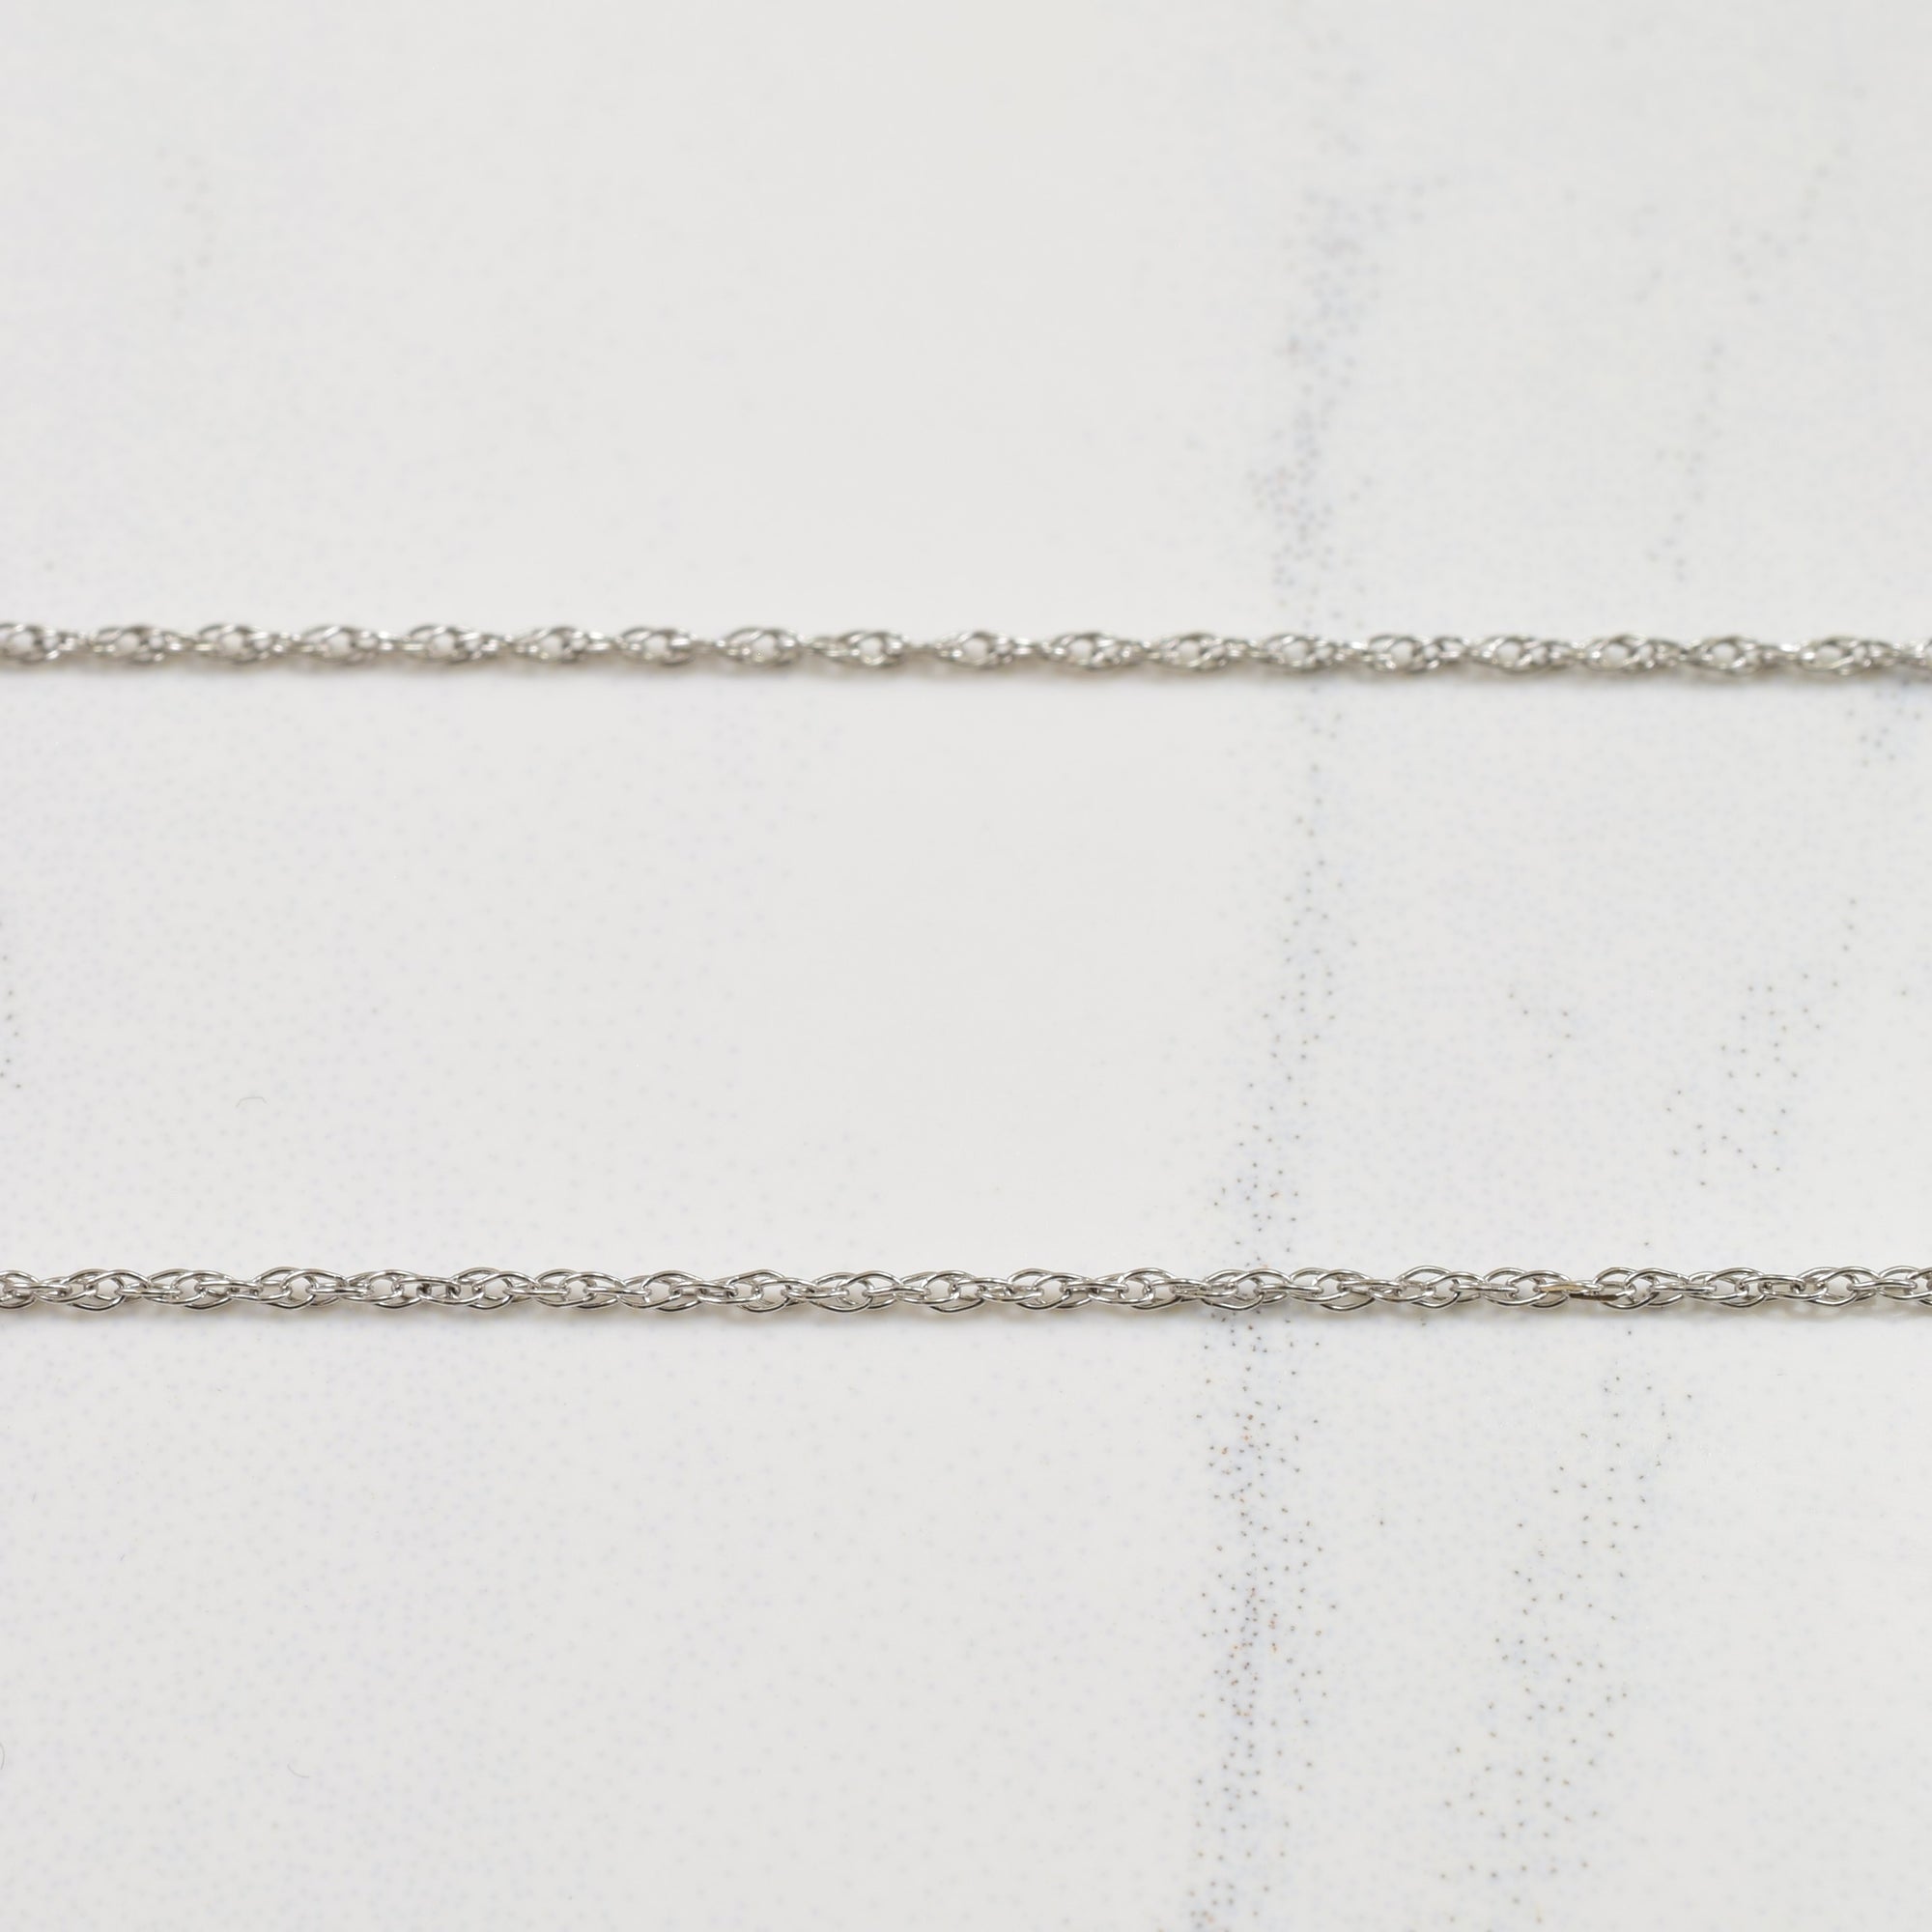 Aquamarine & Diamond Necklace | 0.01ctw, 0.70ct | 18